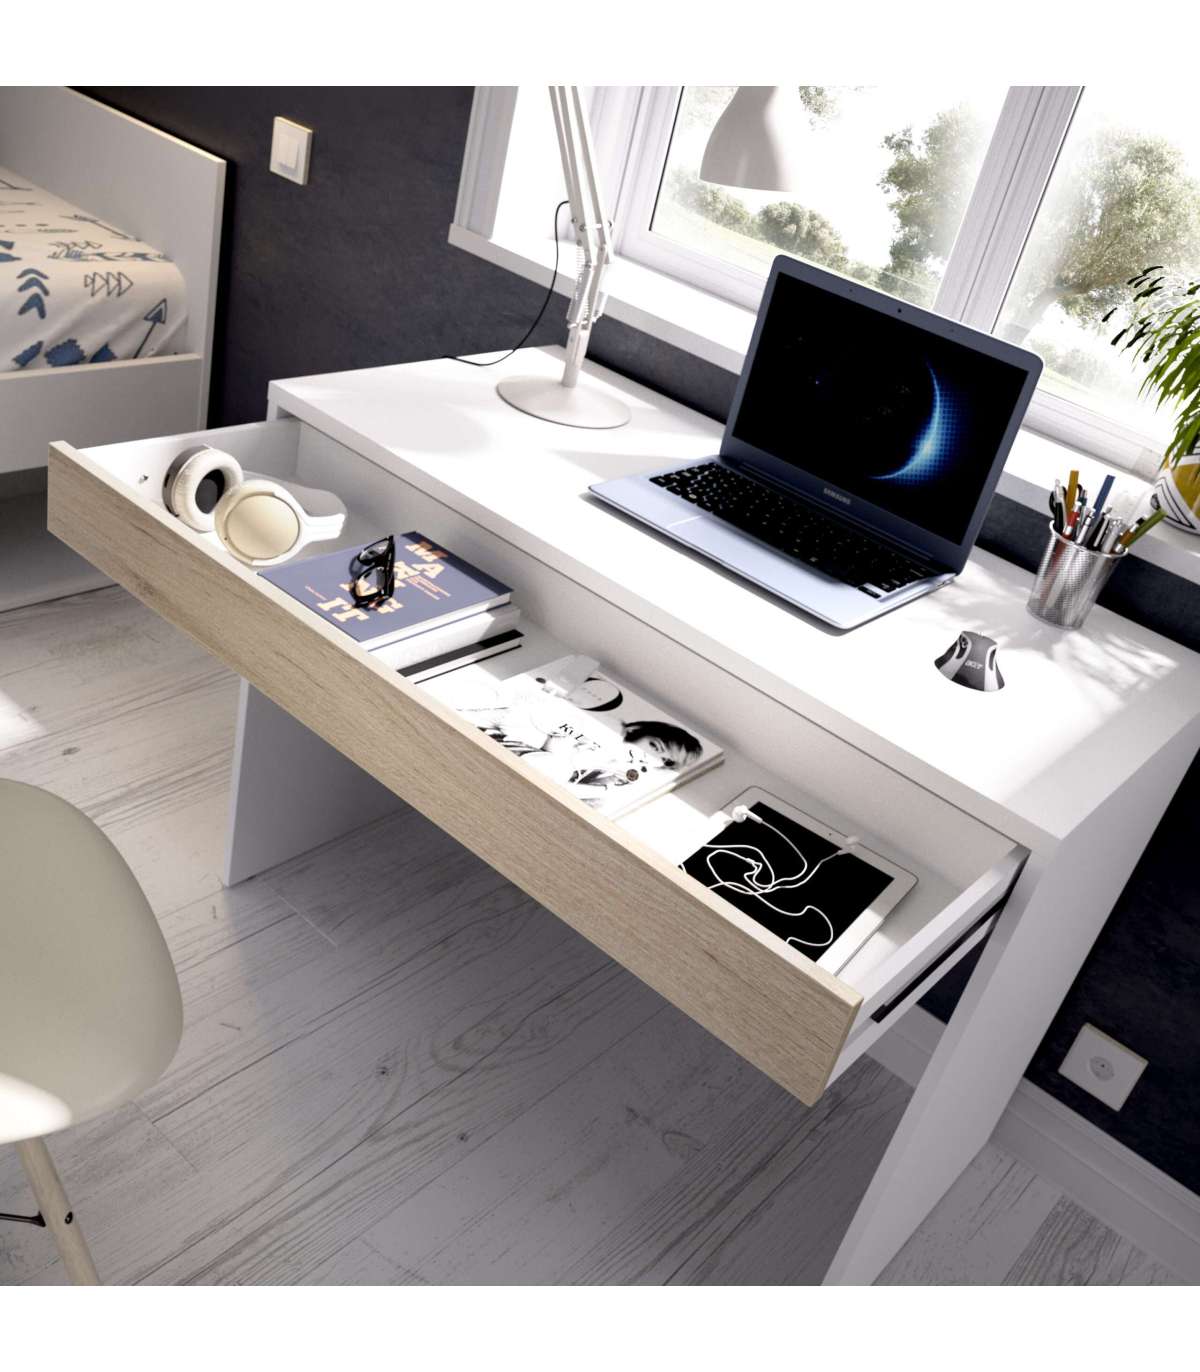 Mesa escritorio con cajón acabado en Roble y Blanco Artik 77 cm(alto) x 82  cm (ancho) x 40 cm (fondo)